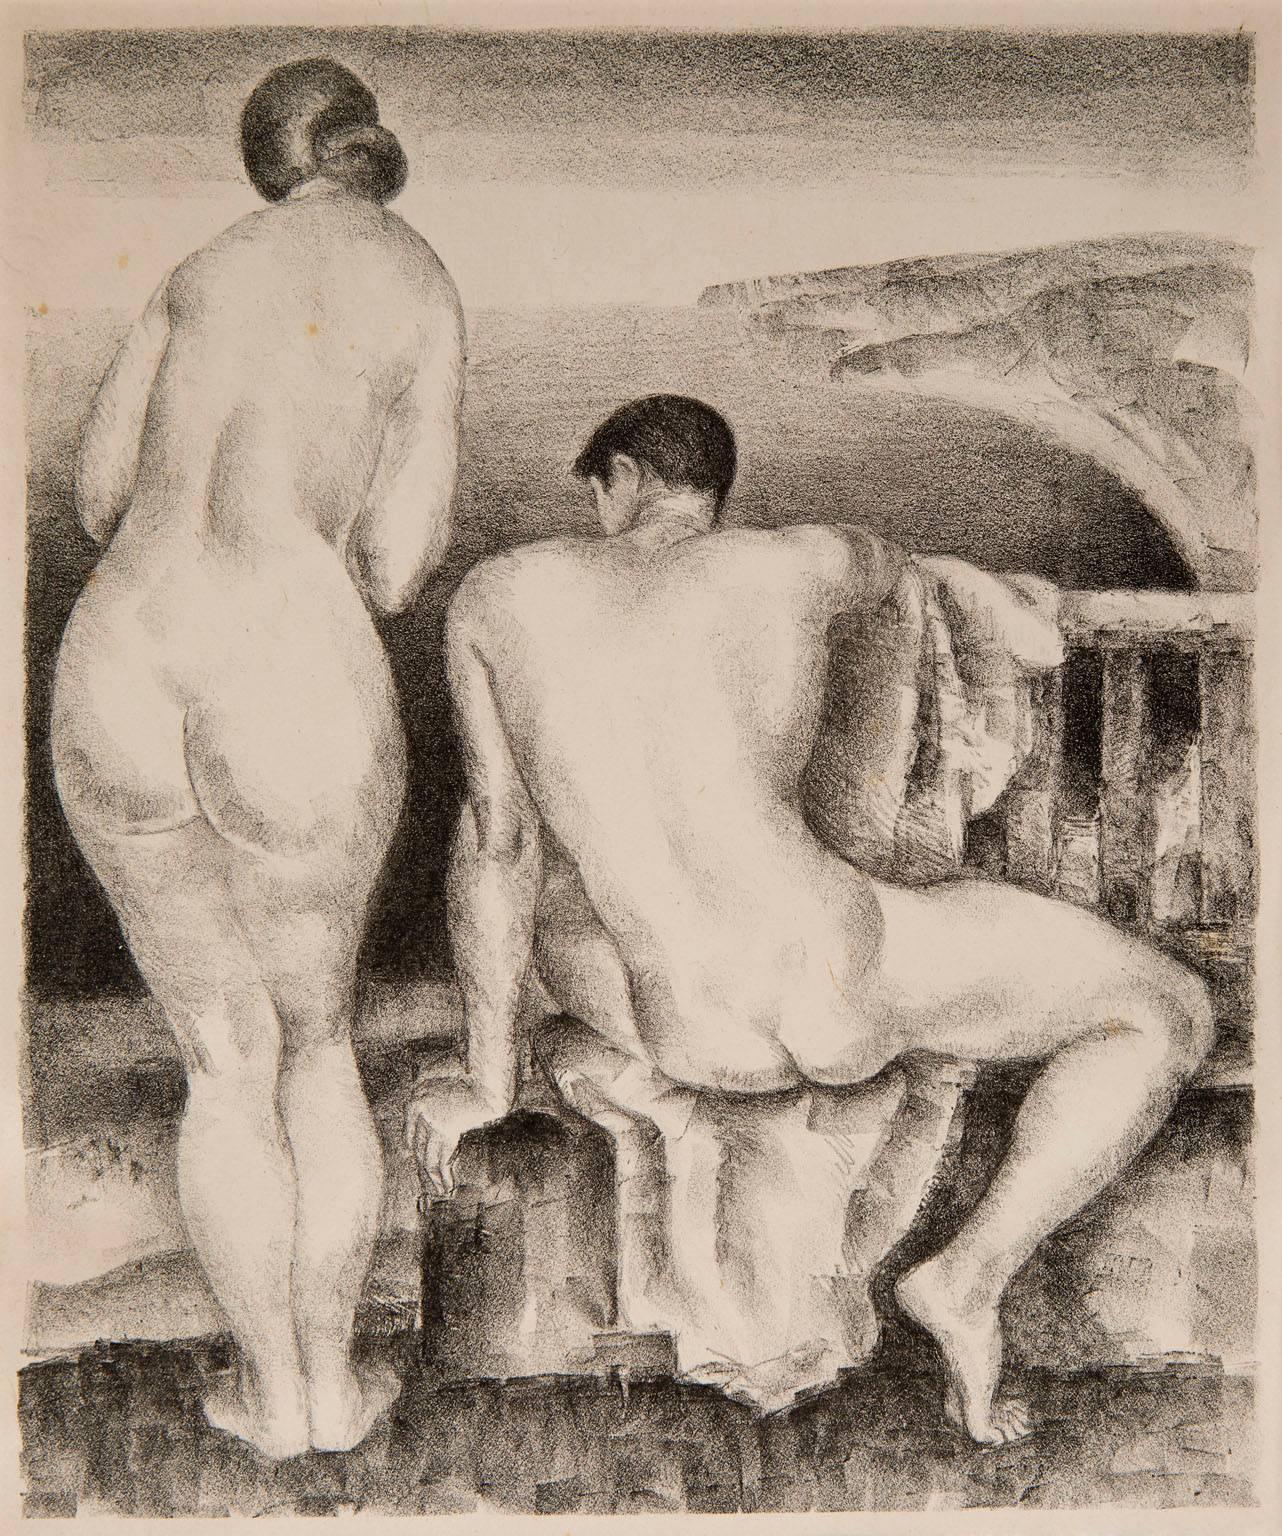 Mabel Alvarez Nude Print - Nudes Above the Sea